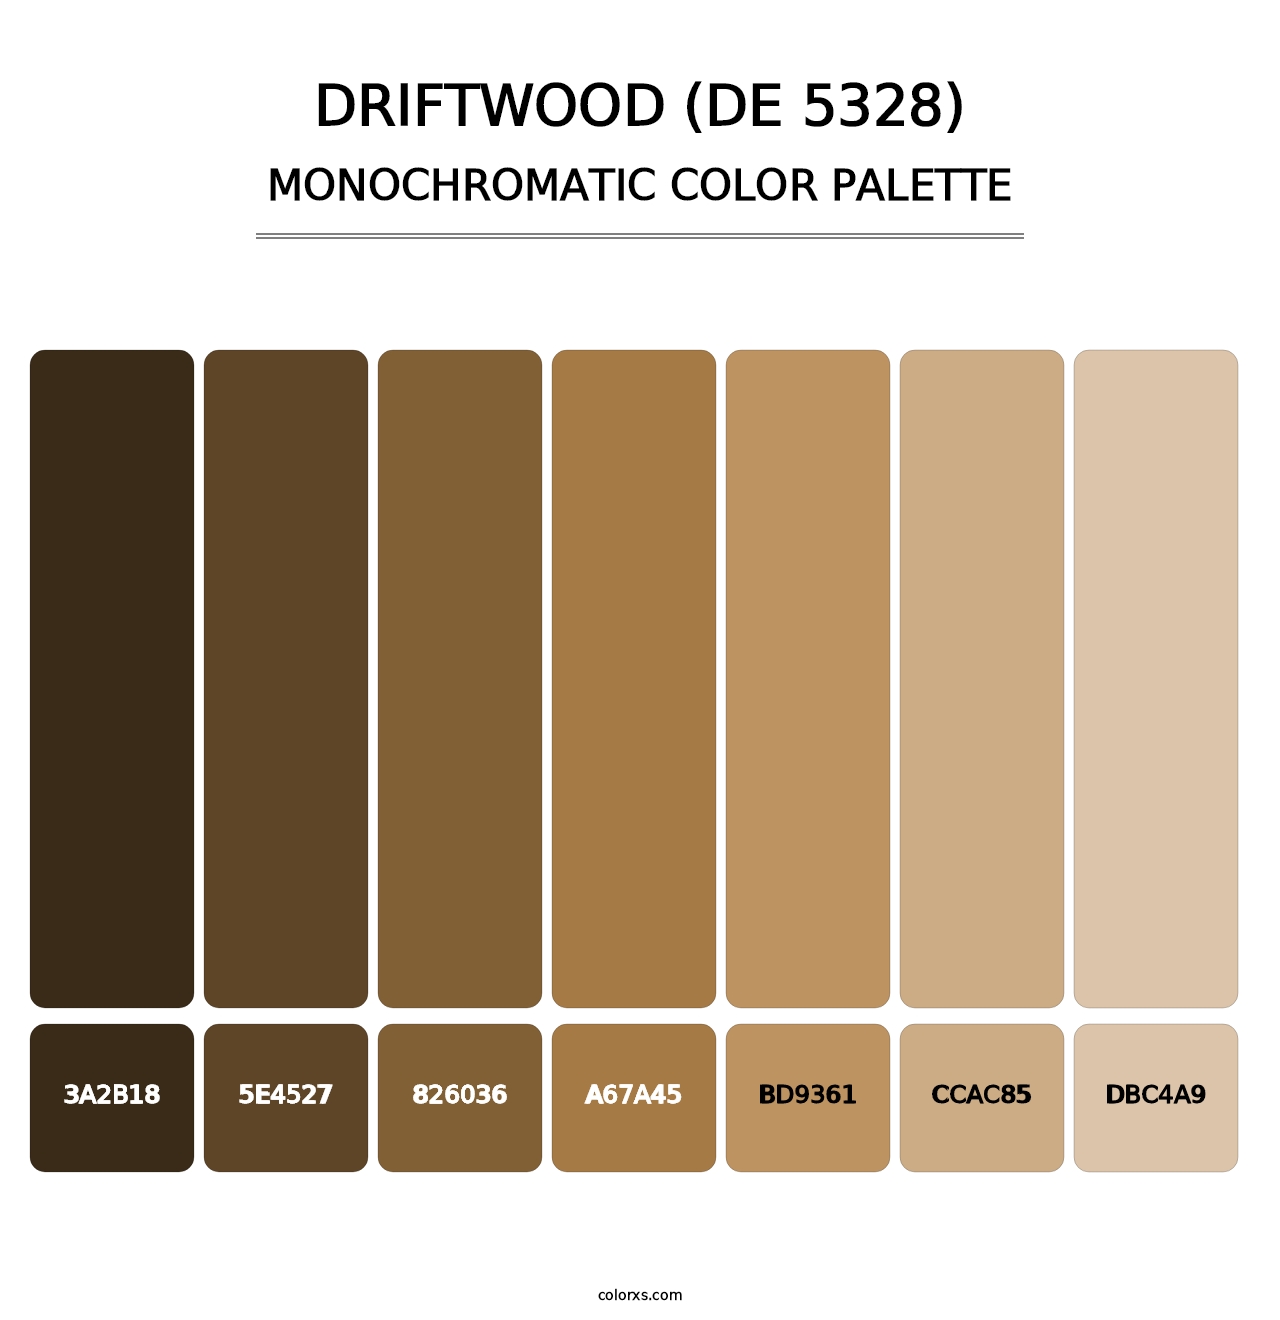 Driftwood (DE 5328) - Monochromatic Color Palette